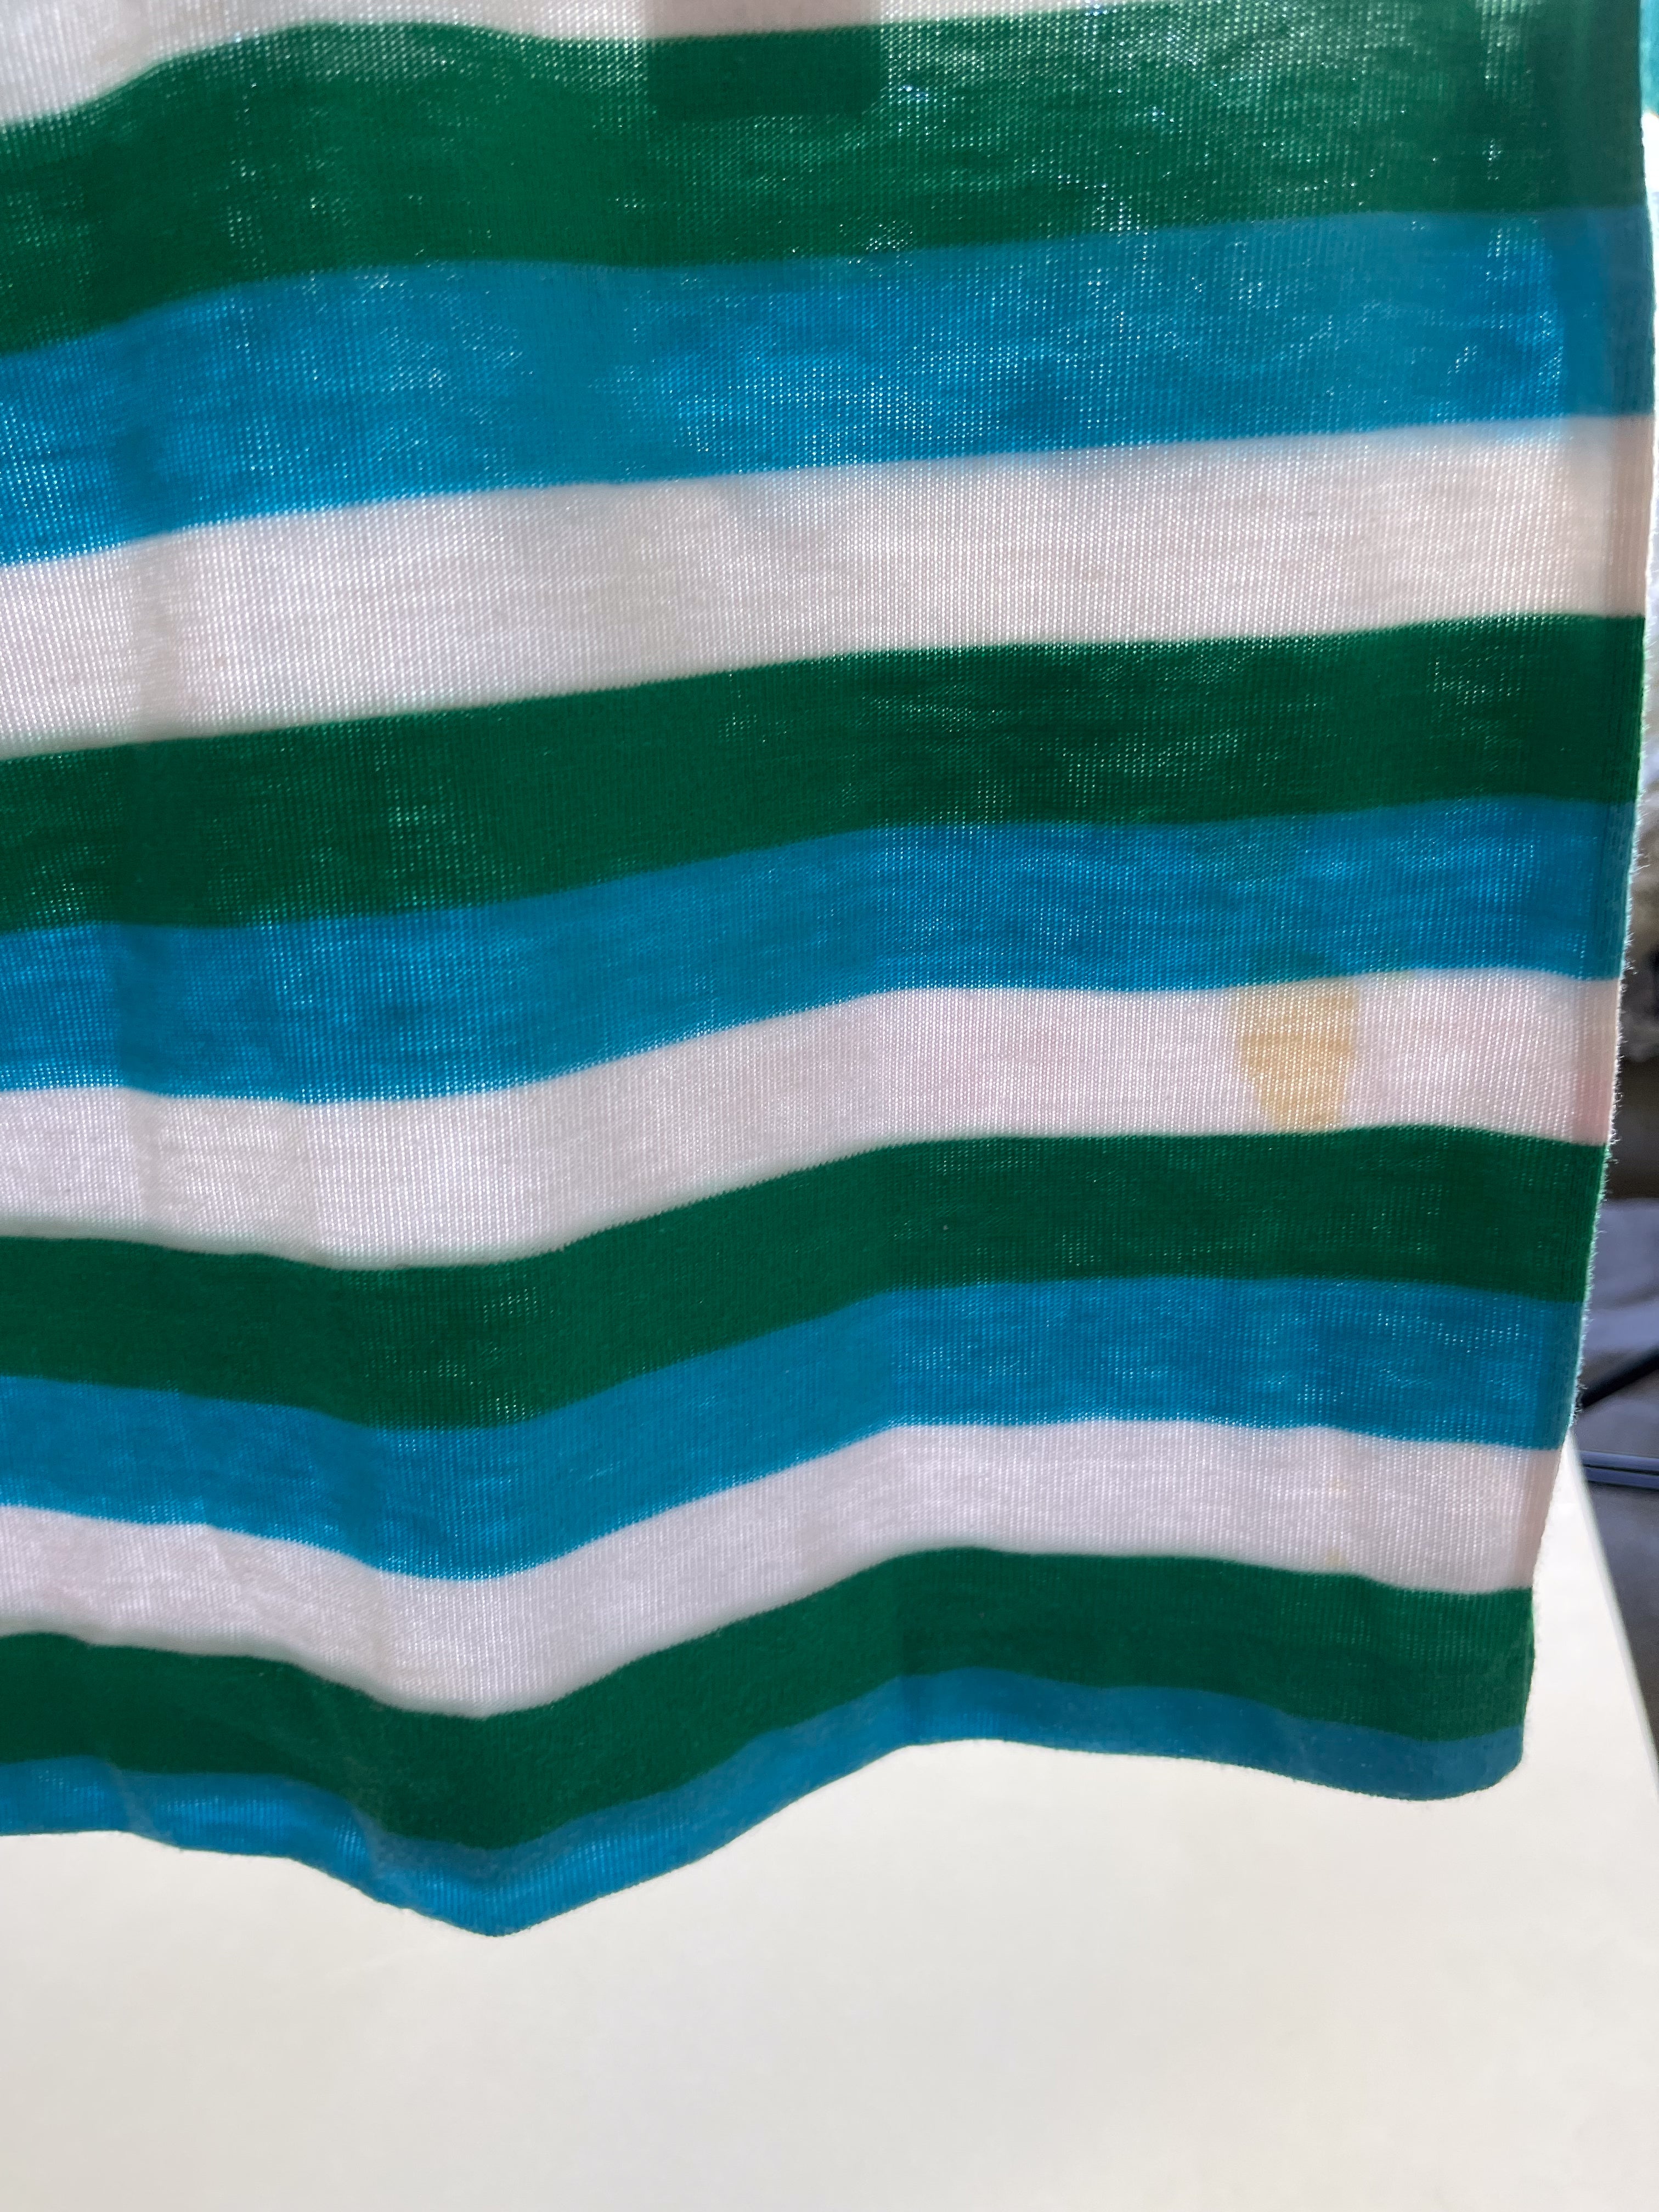 Vintage Health-tex striped polo shirt 🇺🇸 (7y)